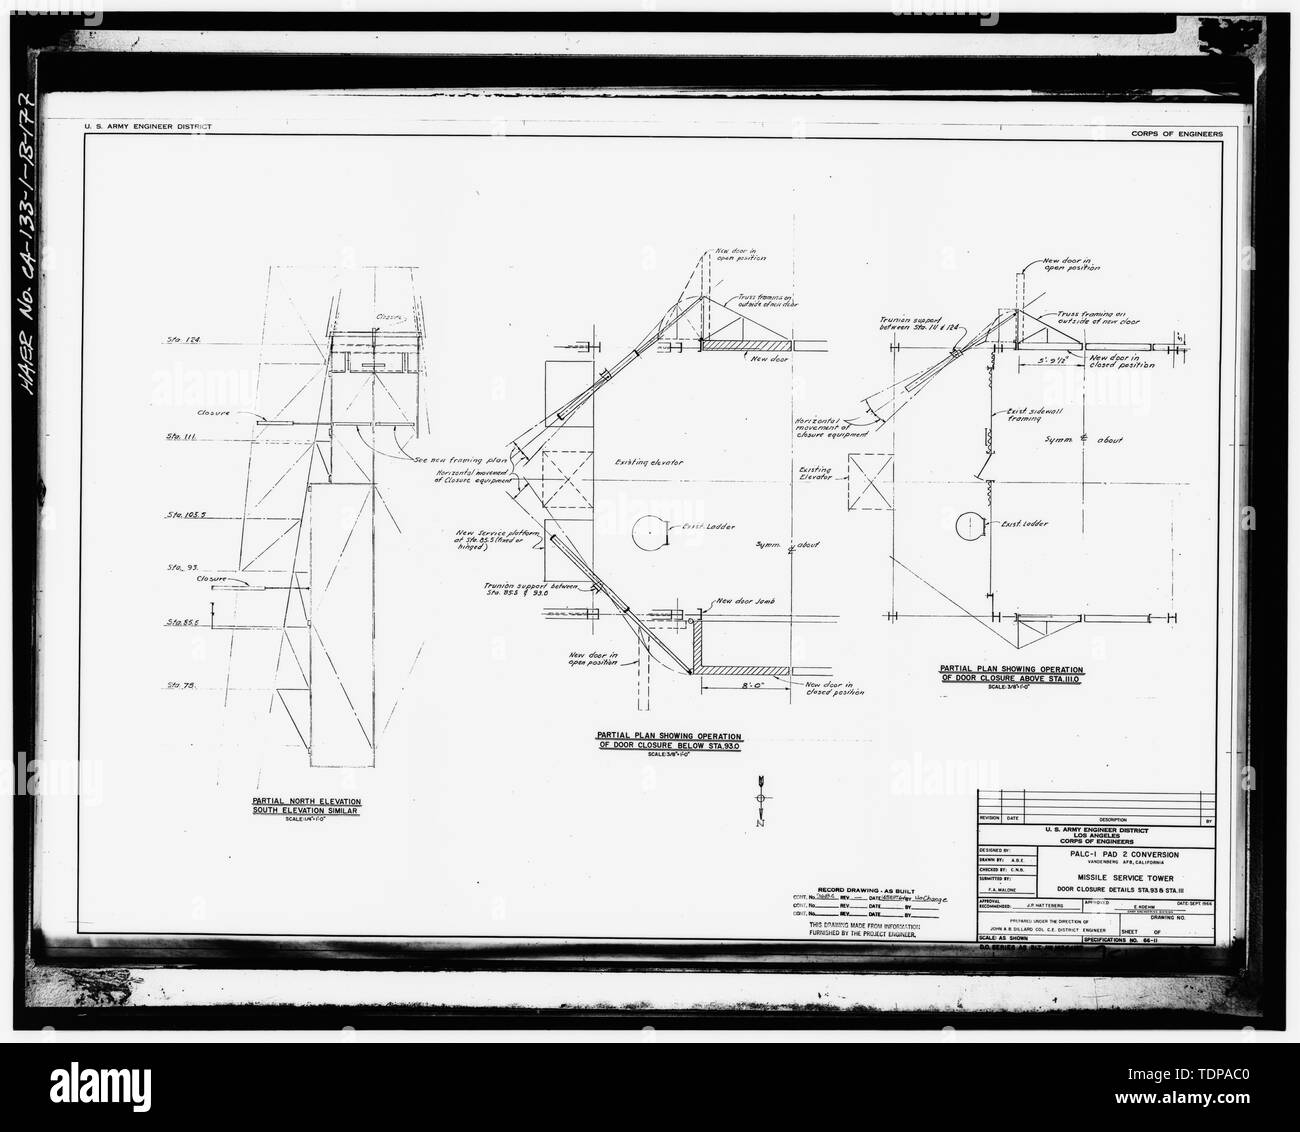 Fotocopia del dibujo (1966 dibujo estructural por U. S. Army ingeniero,  distrito de Los Angeles Corps of Engineers) DETALLES DEL CIERRE DE LA PUERTA  PARA MST 93 estaciones y 111, ESPECIFICACIONES Nº